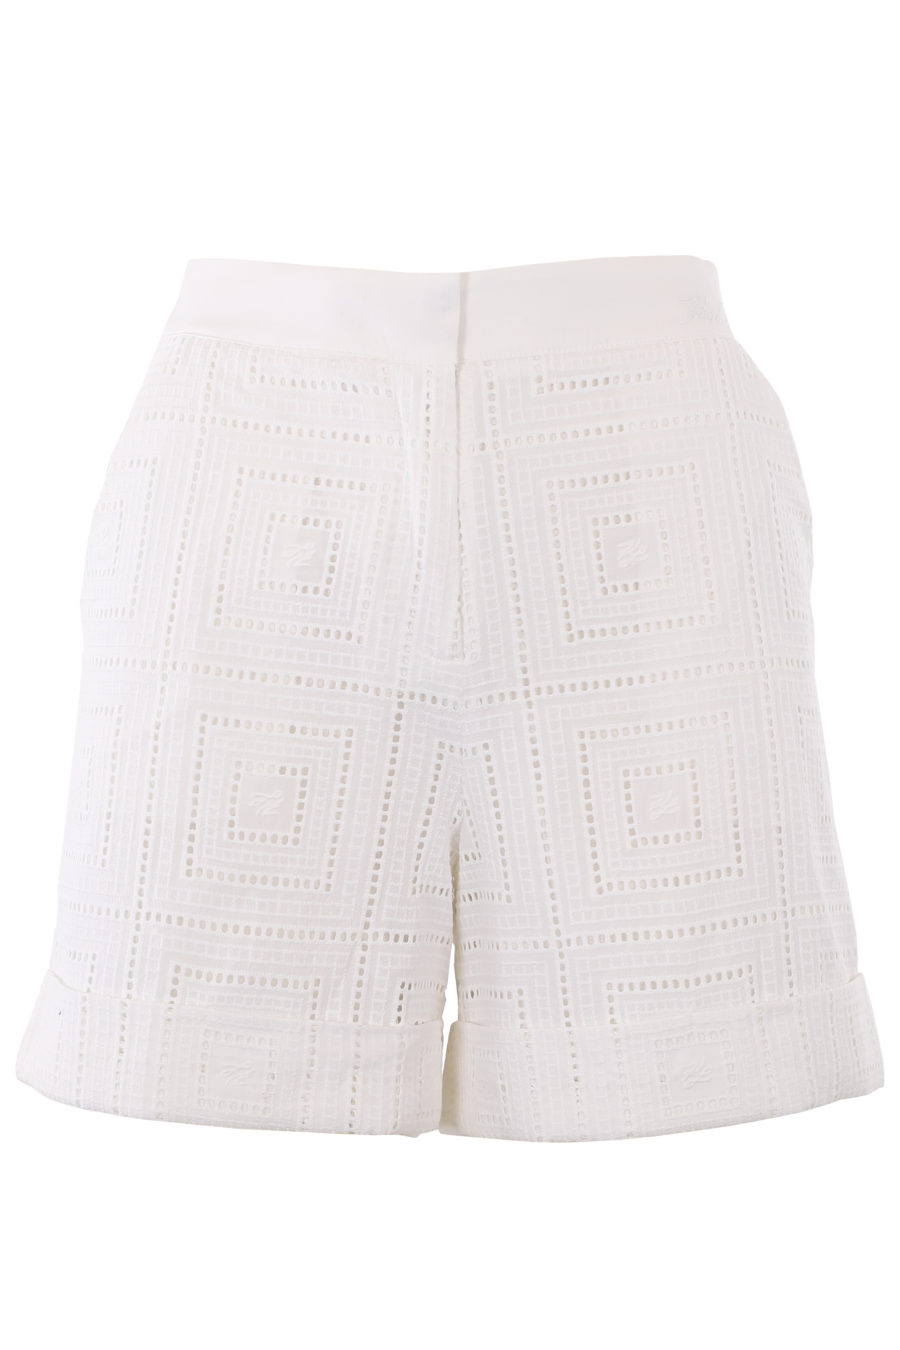 Pantalones cortos blancos bordados - IMG 1340